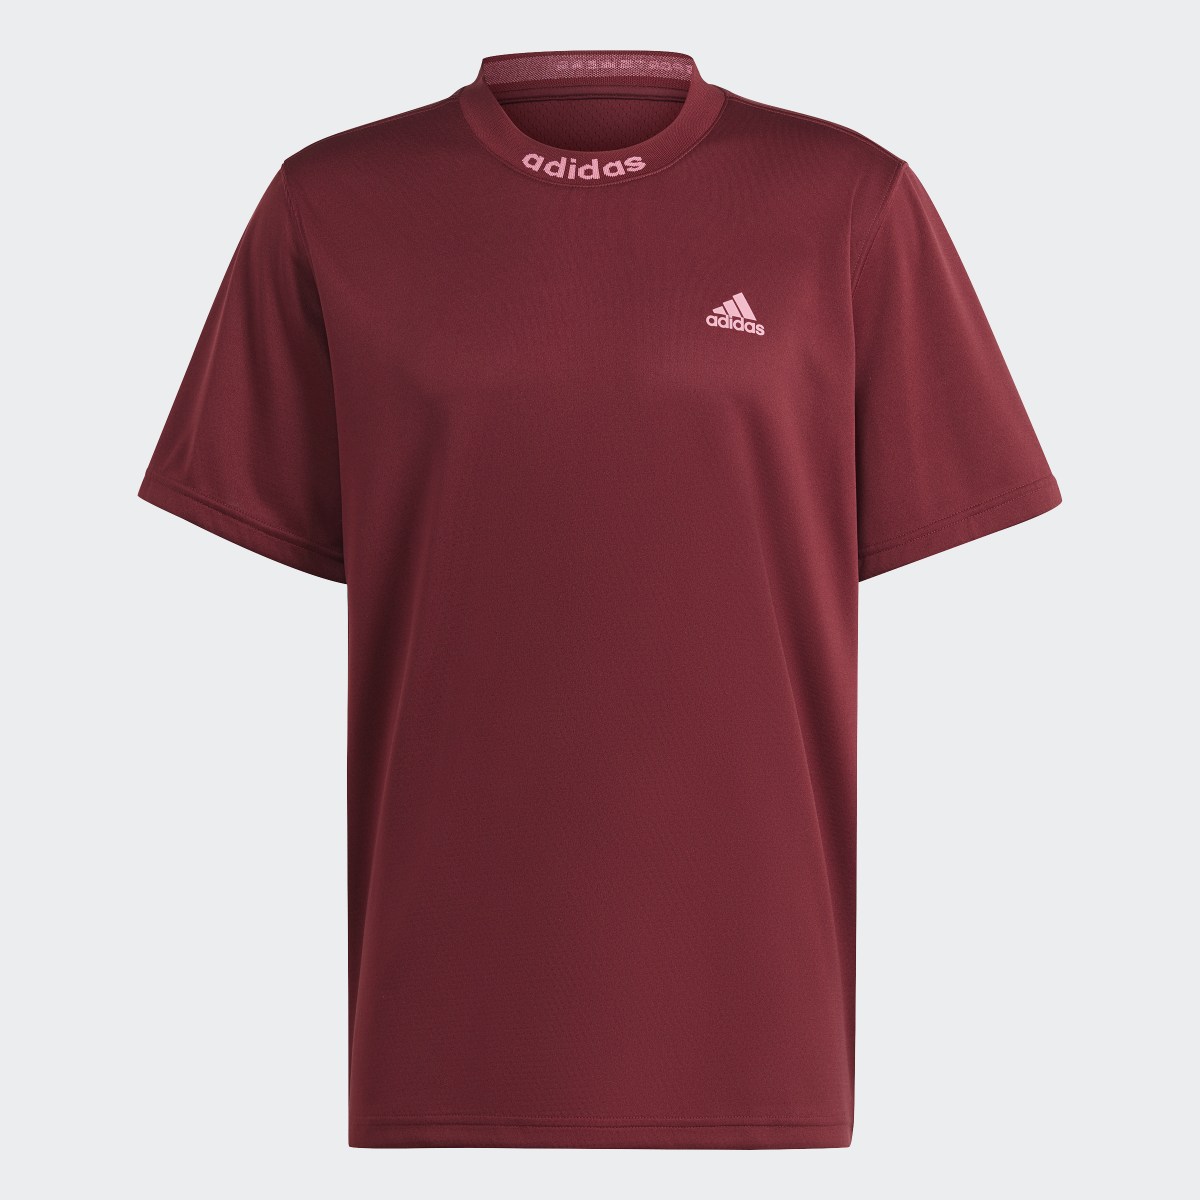 Adidas Camiseta Mesh-Back. 5